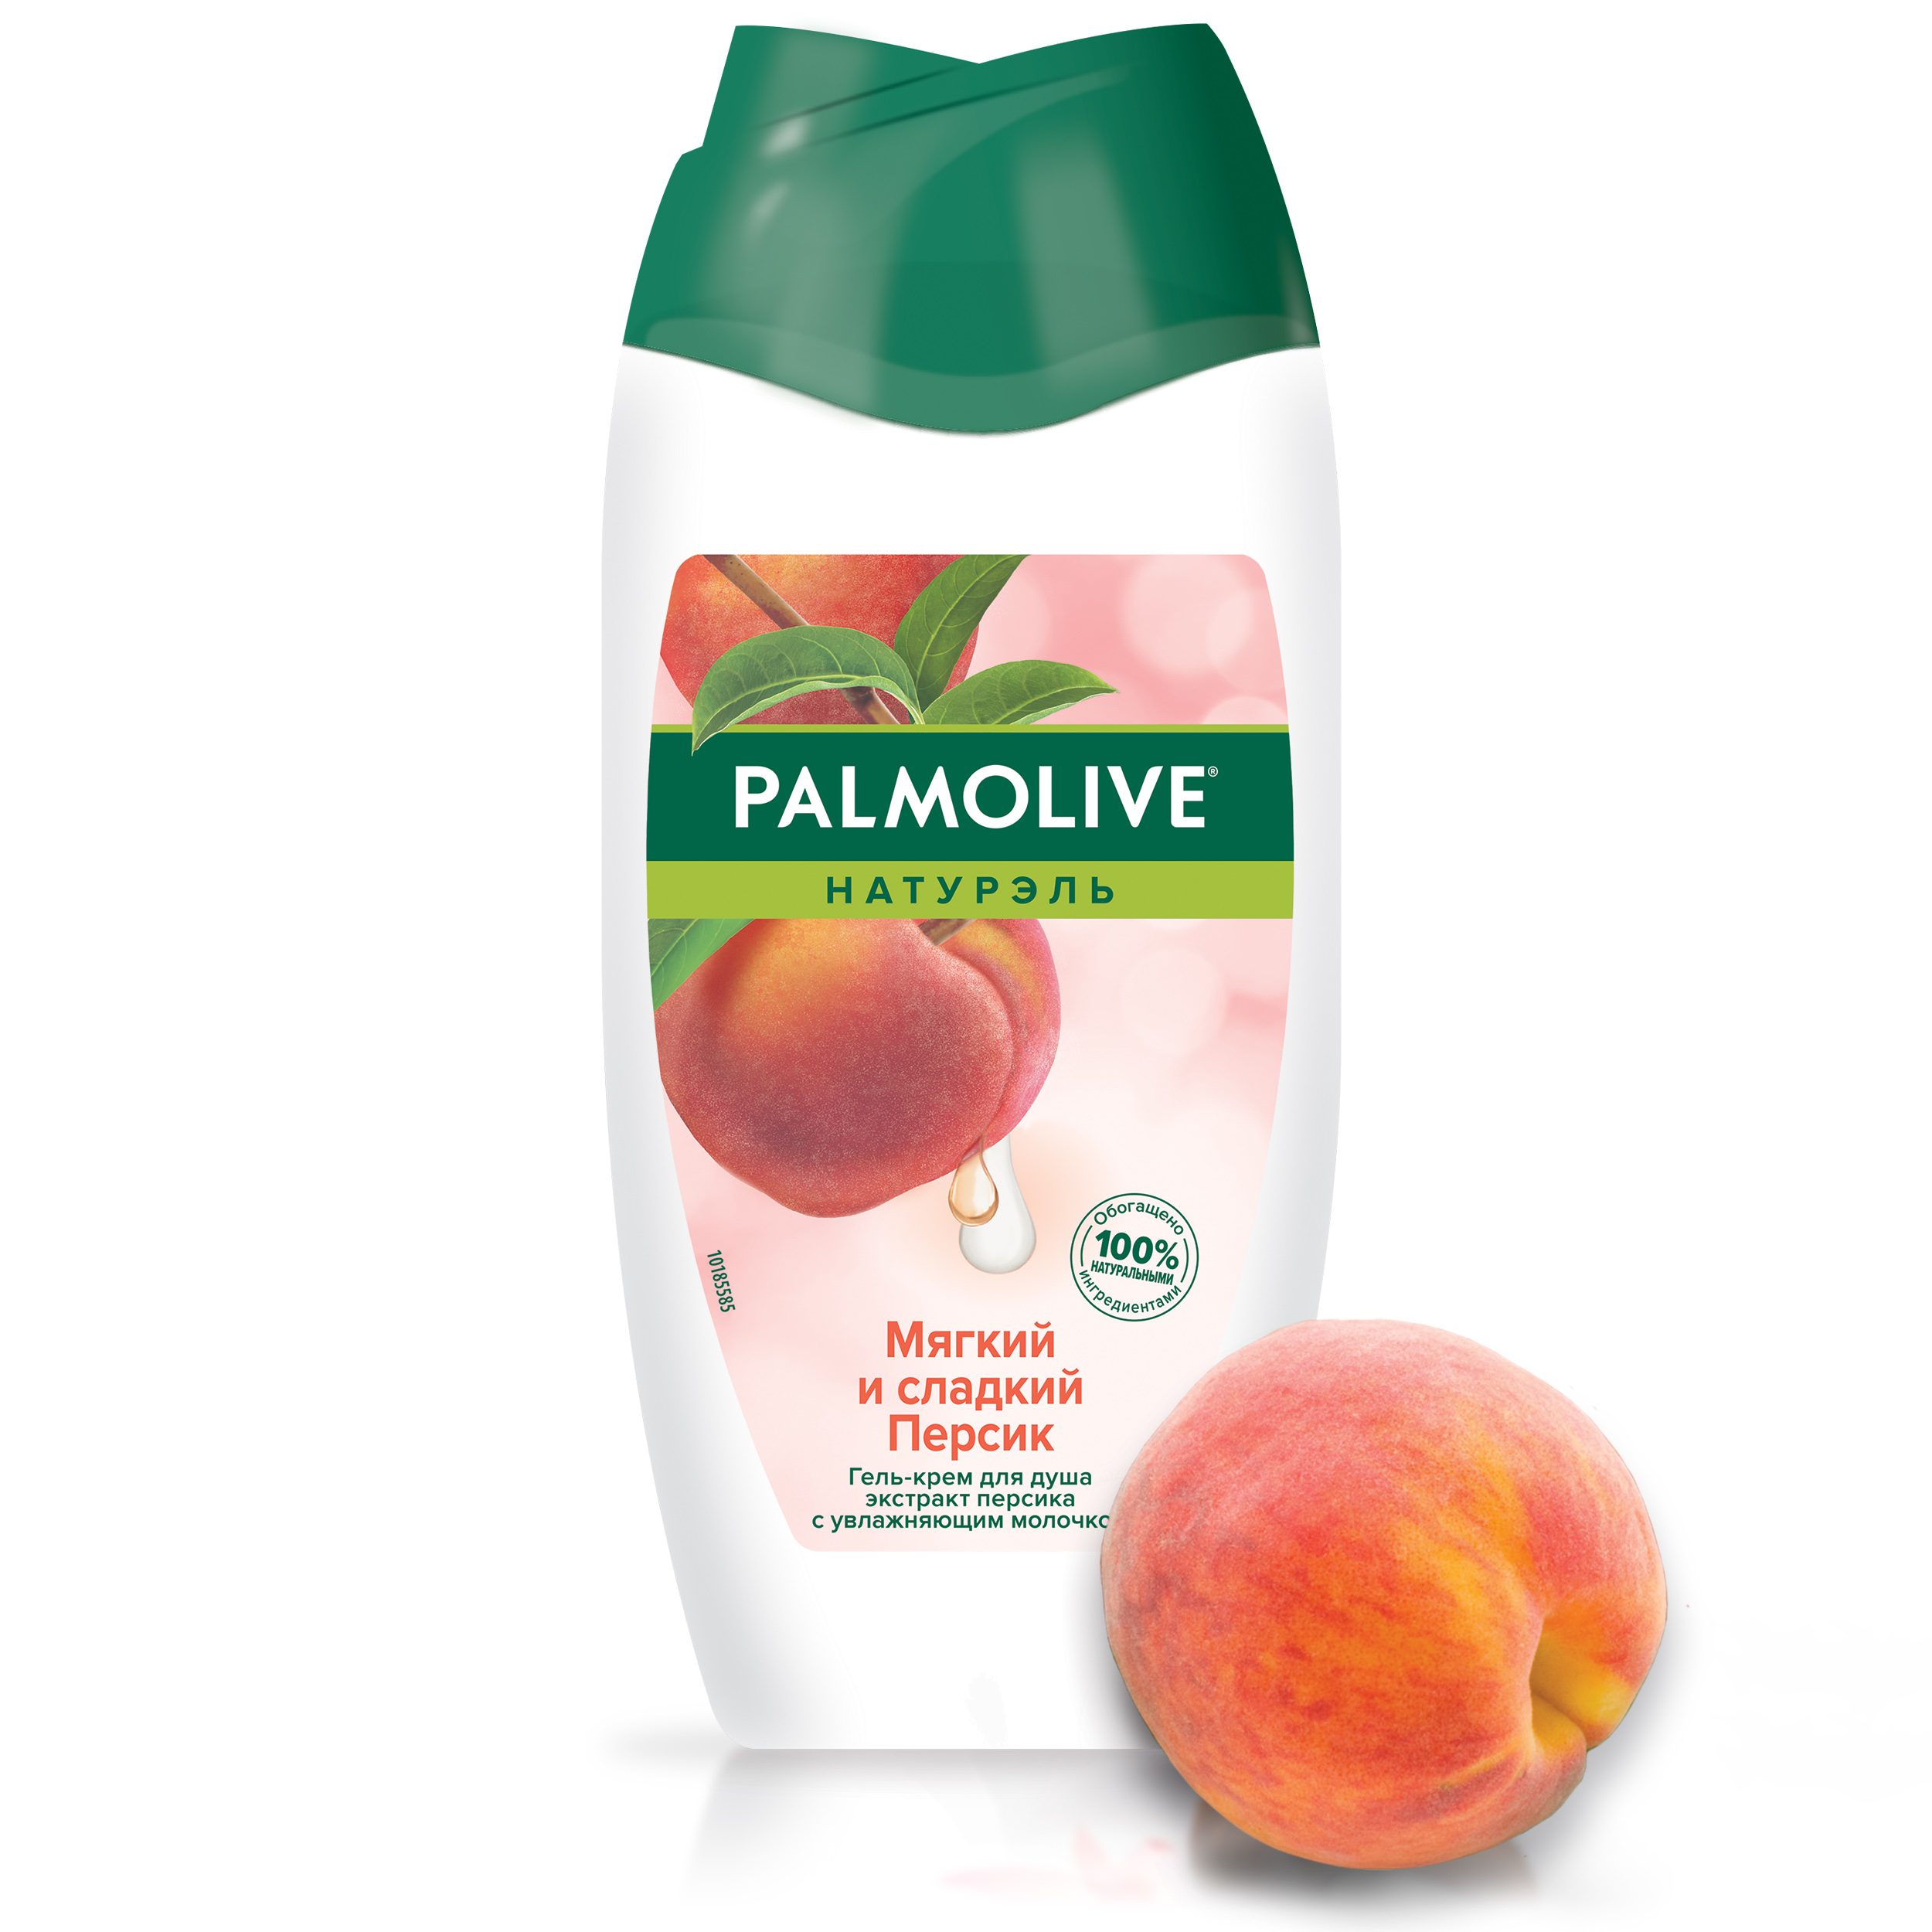 Купить Гель для душа Palmolive Мягкий и сладкий персик 250 мл, мягкий и сладкий персик